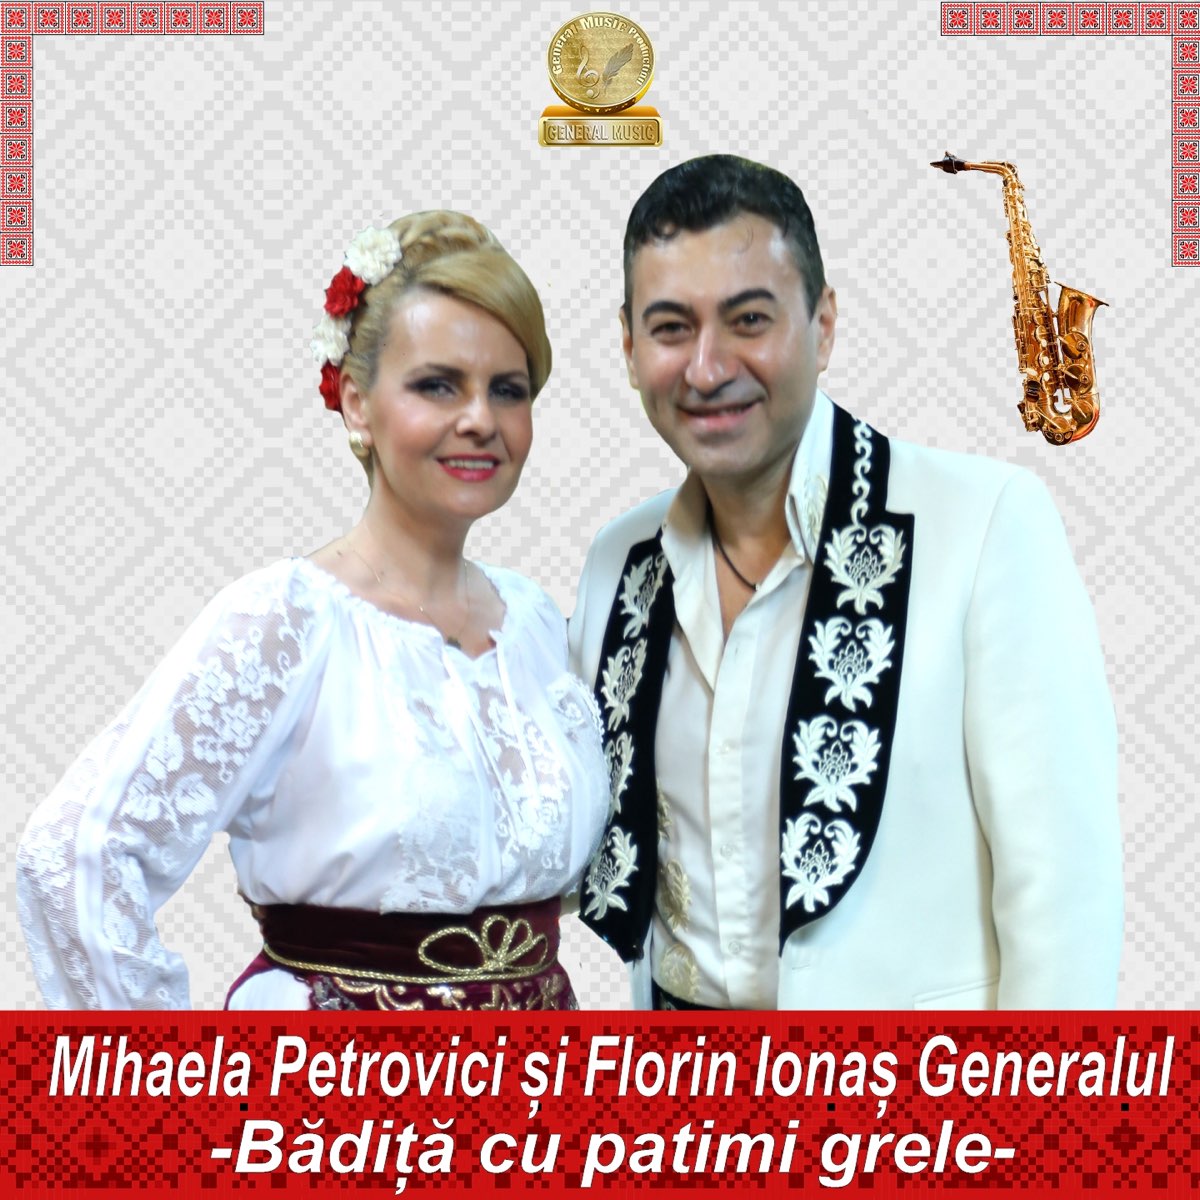 Badita Cu Patimi Grele - Single by Mihaela Petrovici & Florin Ionas  Generalul on Apple Music